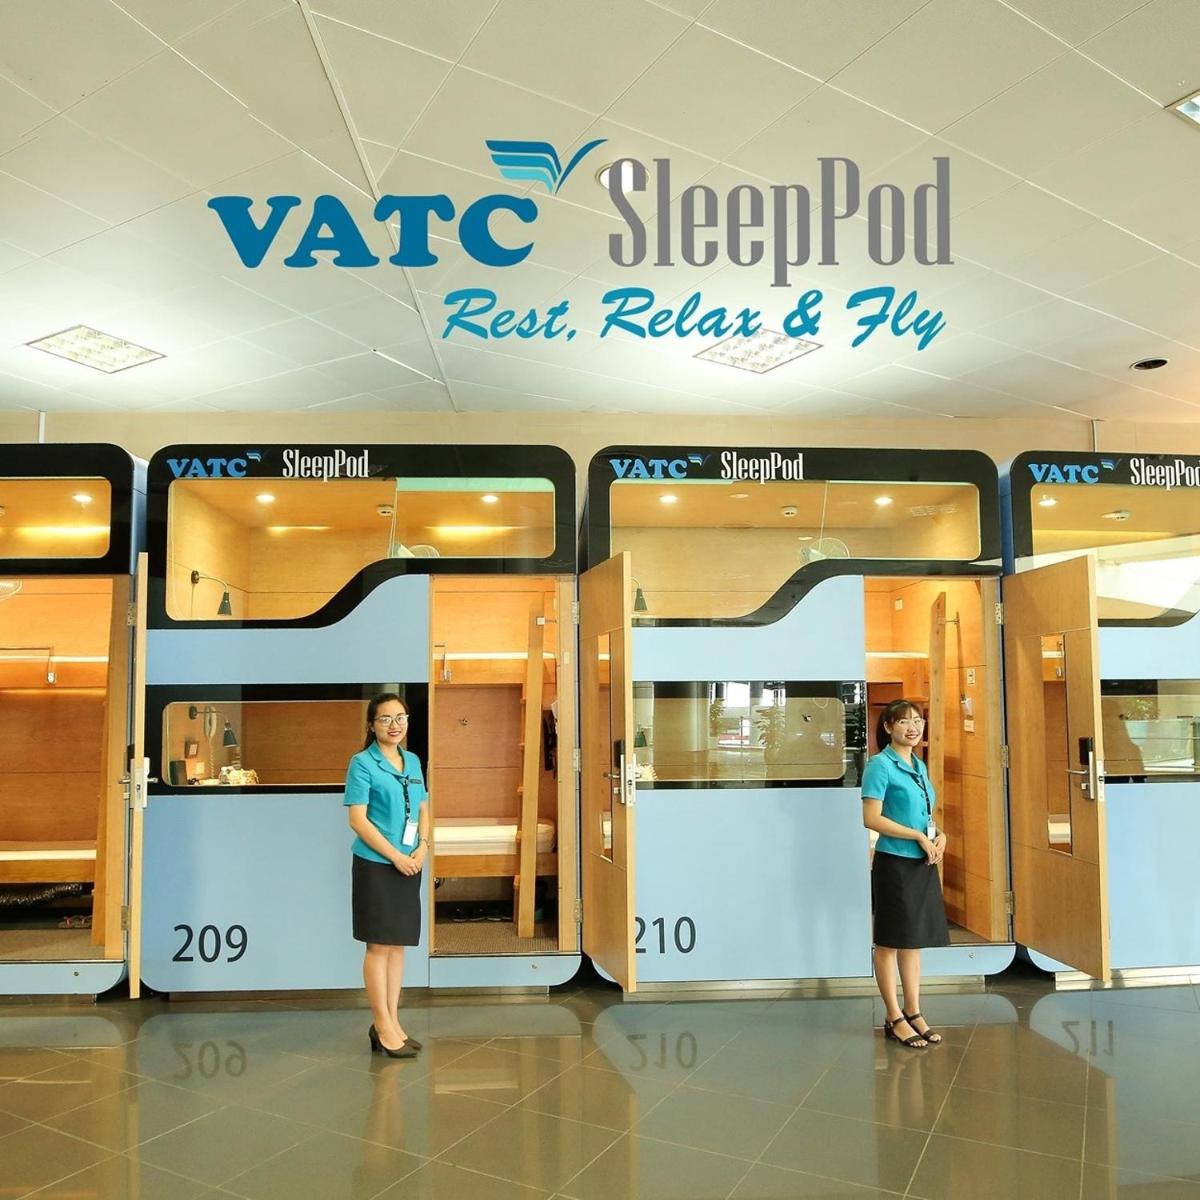 VATC Sleep Pod Terminal 1 - Housity